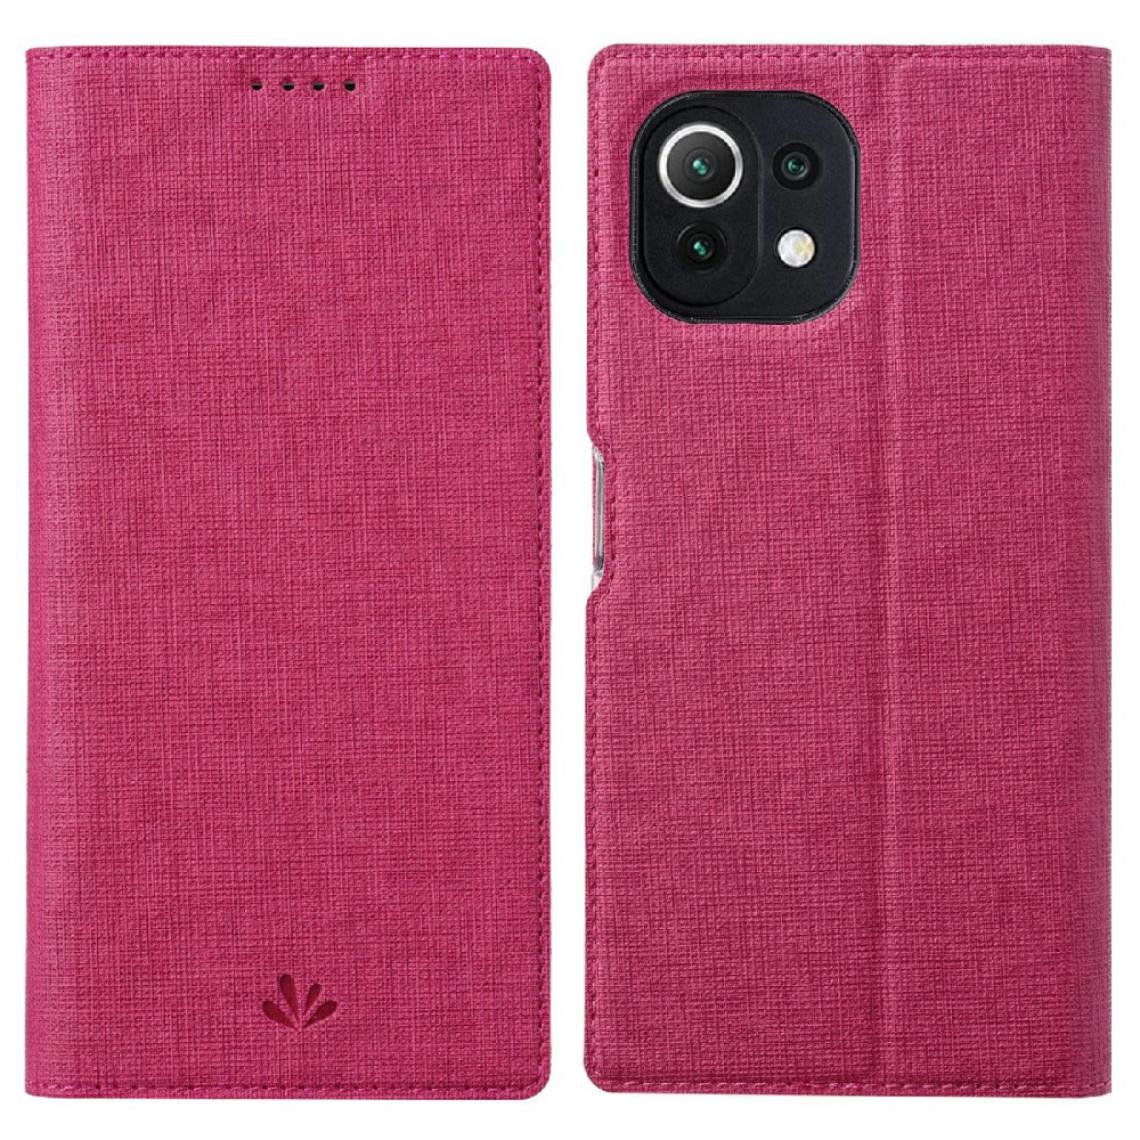 Vili - Etui en PU avec support et porte-cartes rose pour votre Xiaomi Mi 11 Lite 4G/5G - Coque, étui smartphone